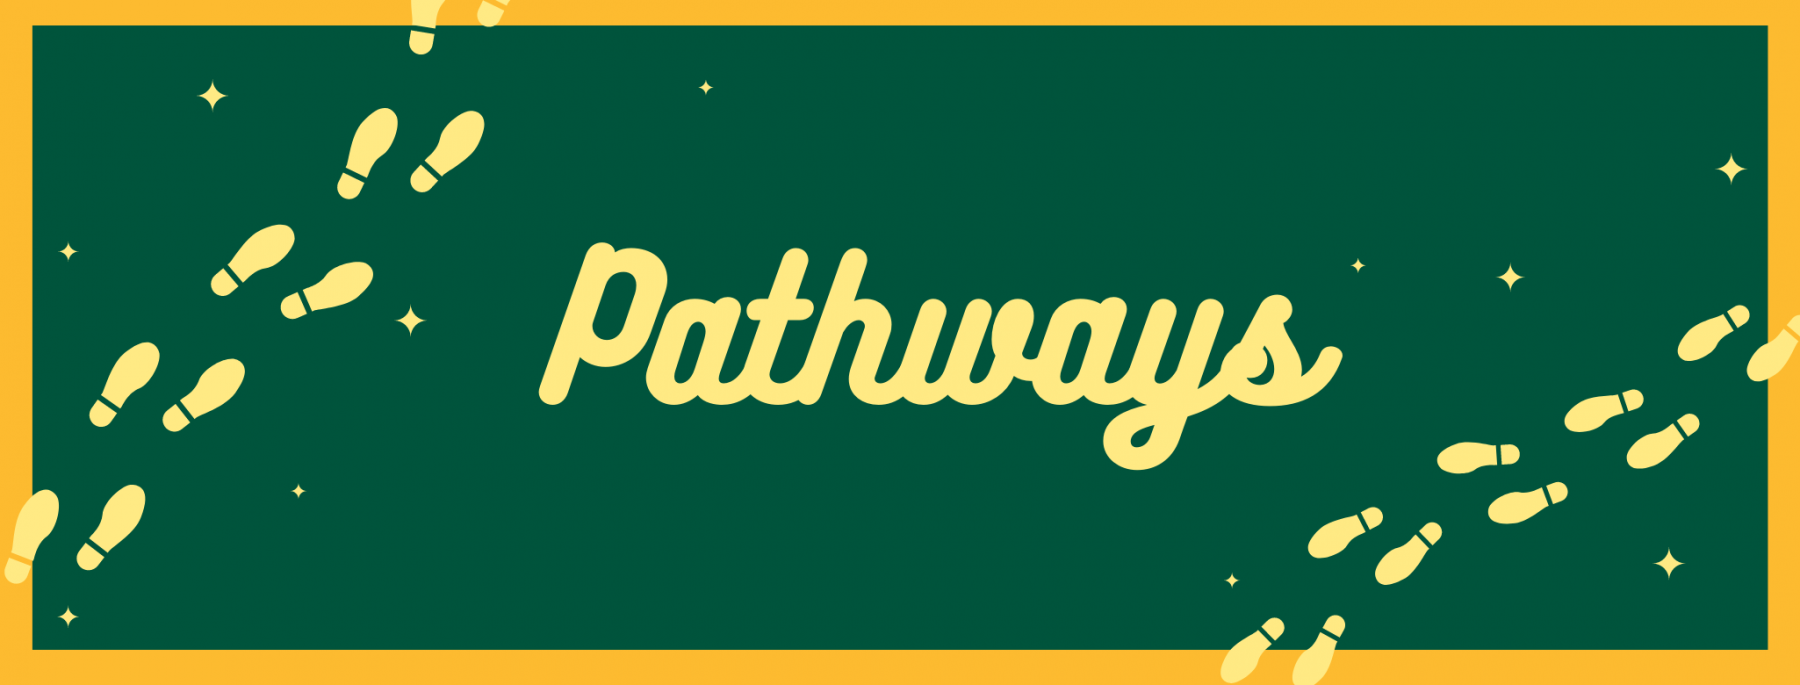 Pathways Signage